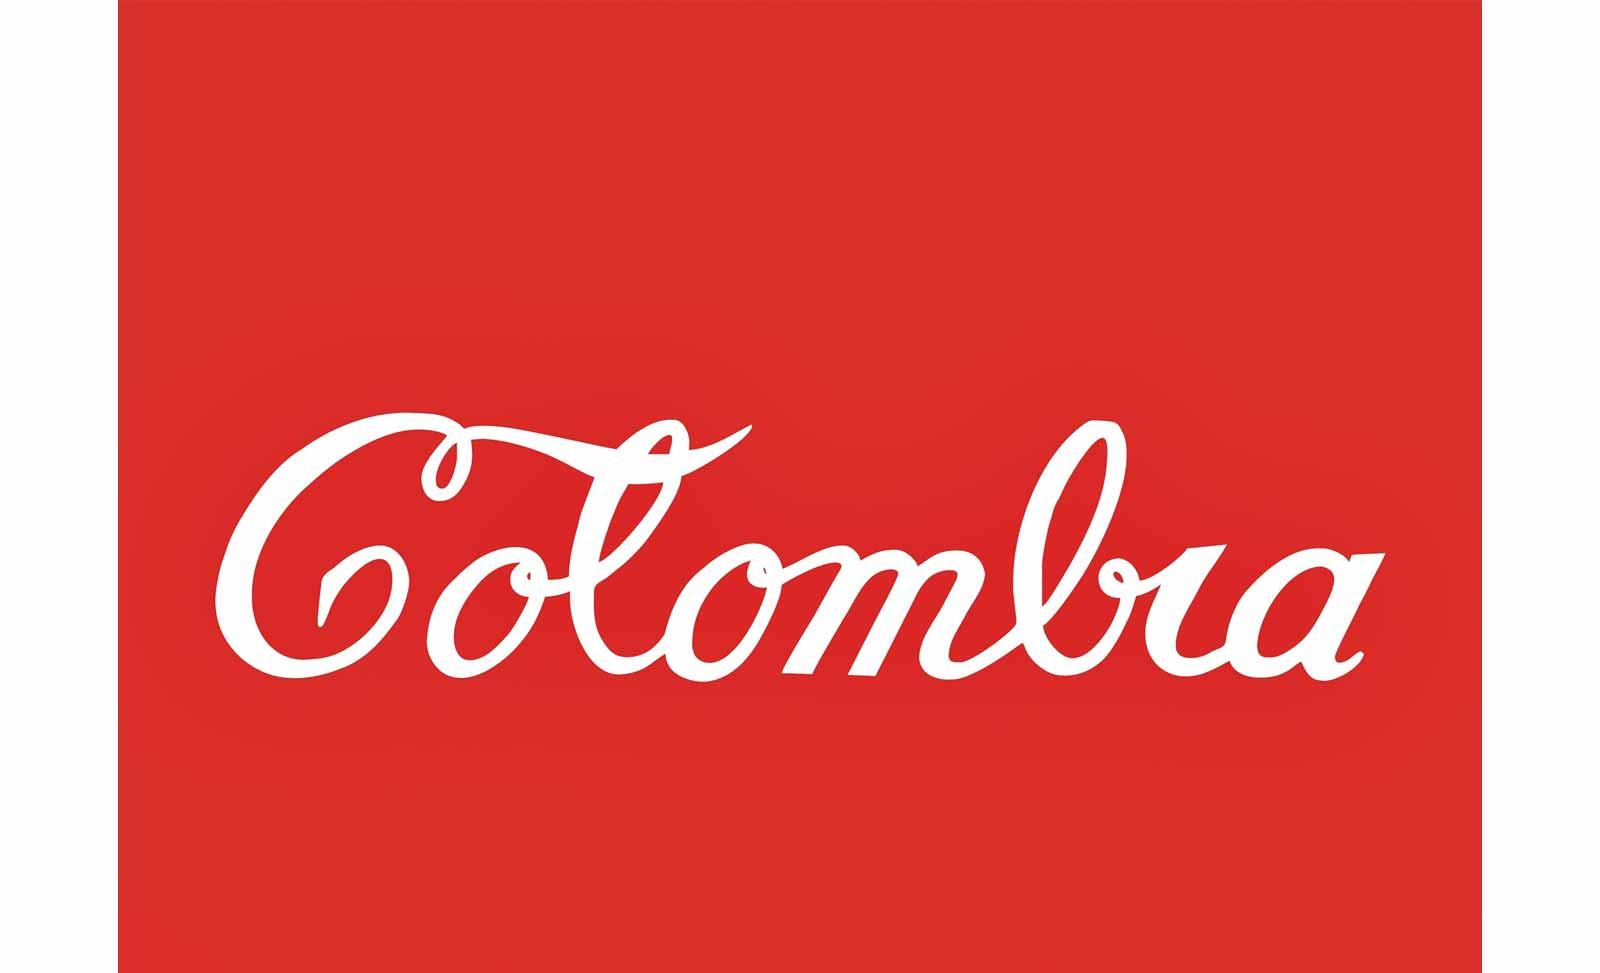 Antonio Caro, Colombia Coca-Cola, 1976.